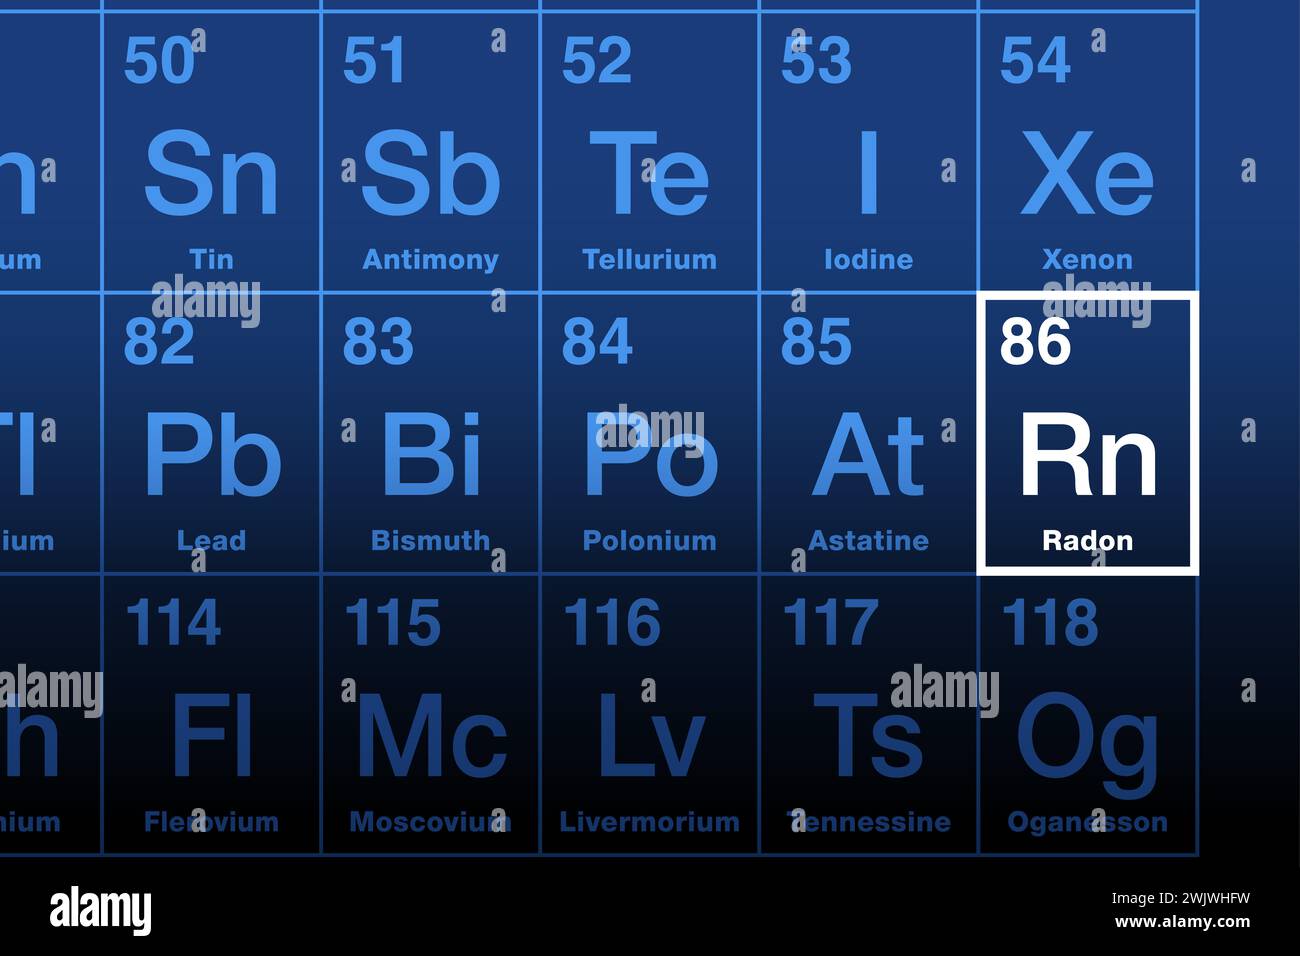 Radon auf dem Periodensystem der Elemente. Radioaktives Edelgas, chemisches Symbol RN und Atomzahl 86. Das Zerfallsprodukt von Radium tritt natürlich auf. Stockfoto